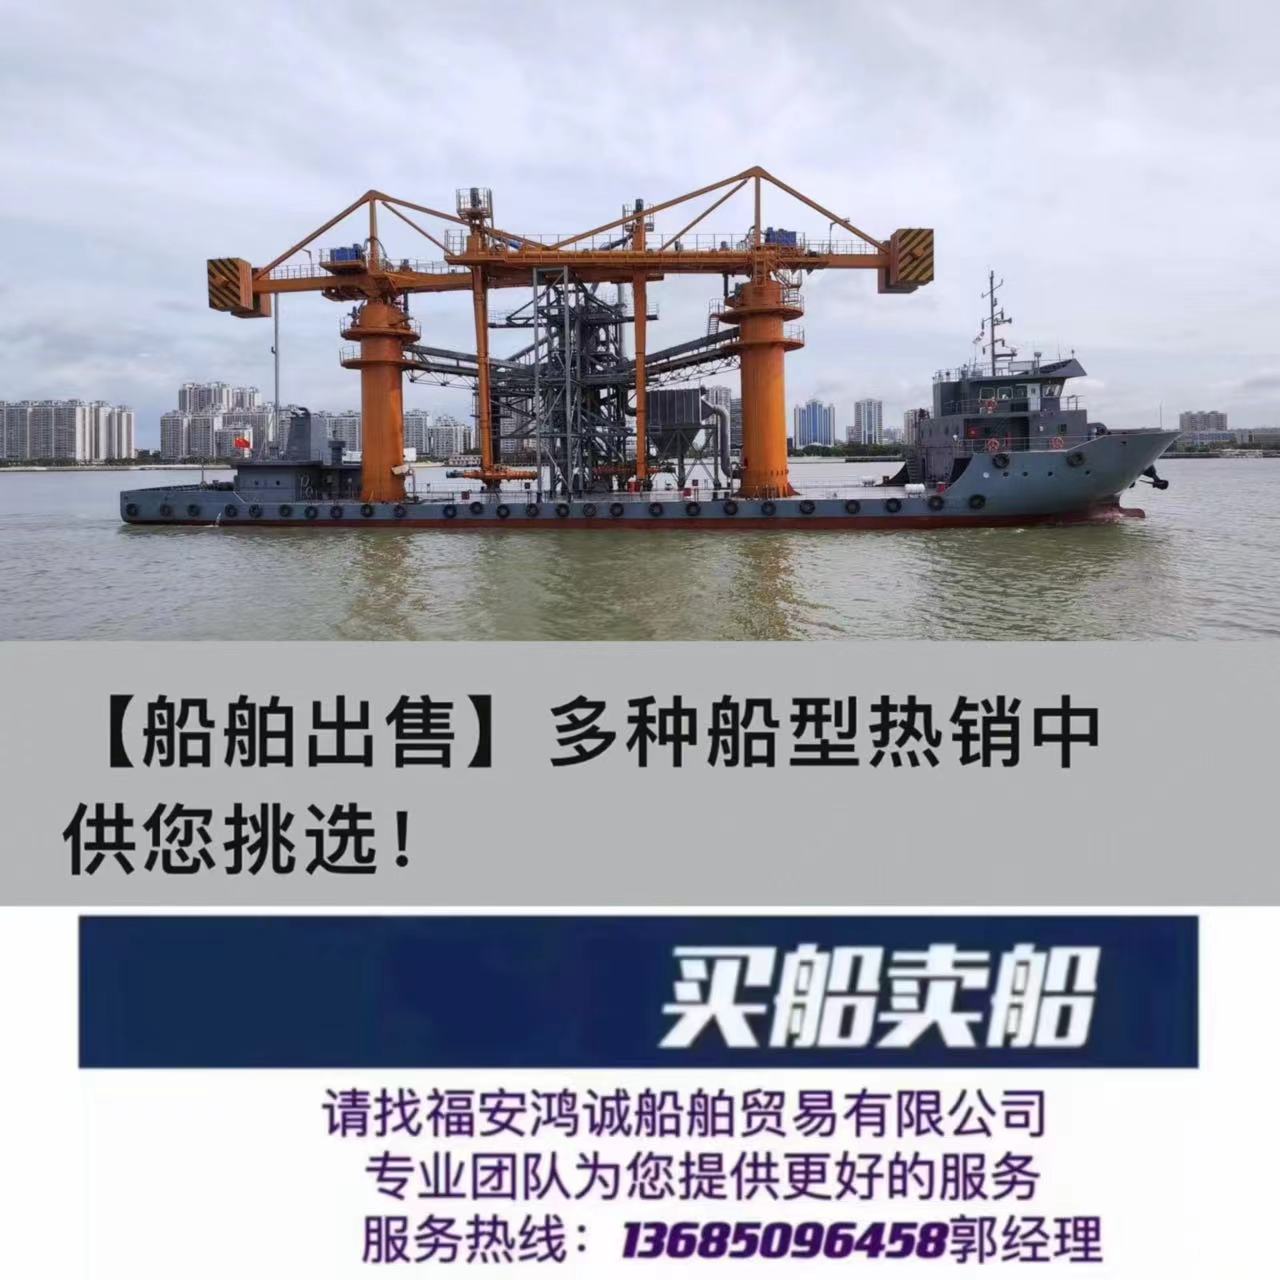 出售：水泥过驳平台船/前驾驶室甲板货船/ 2022年8月汕头船厂建造/